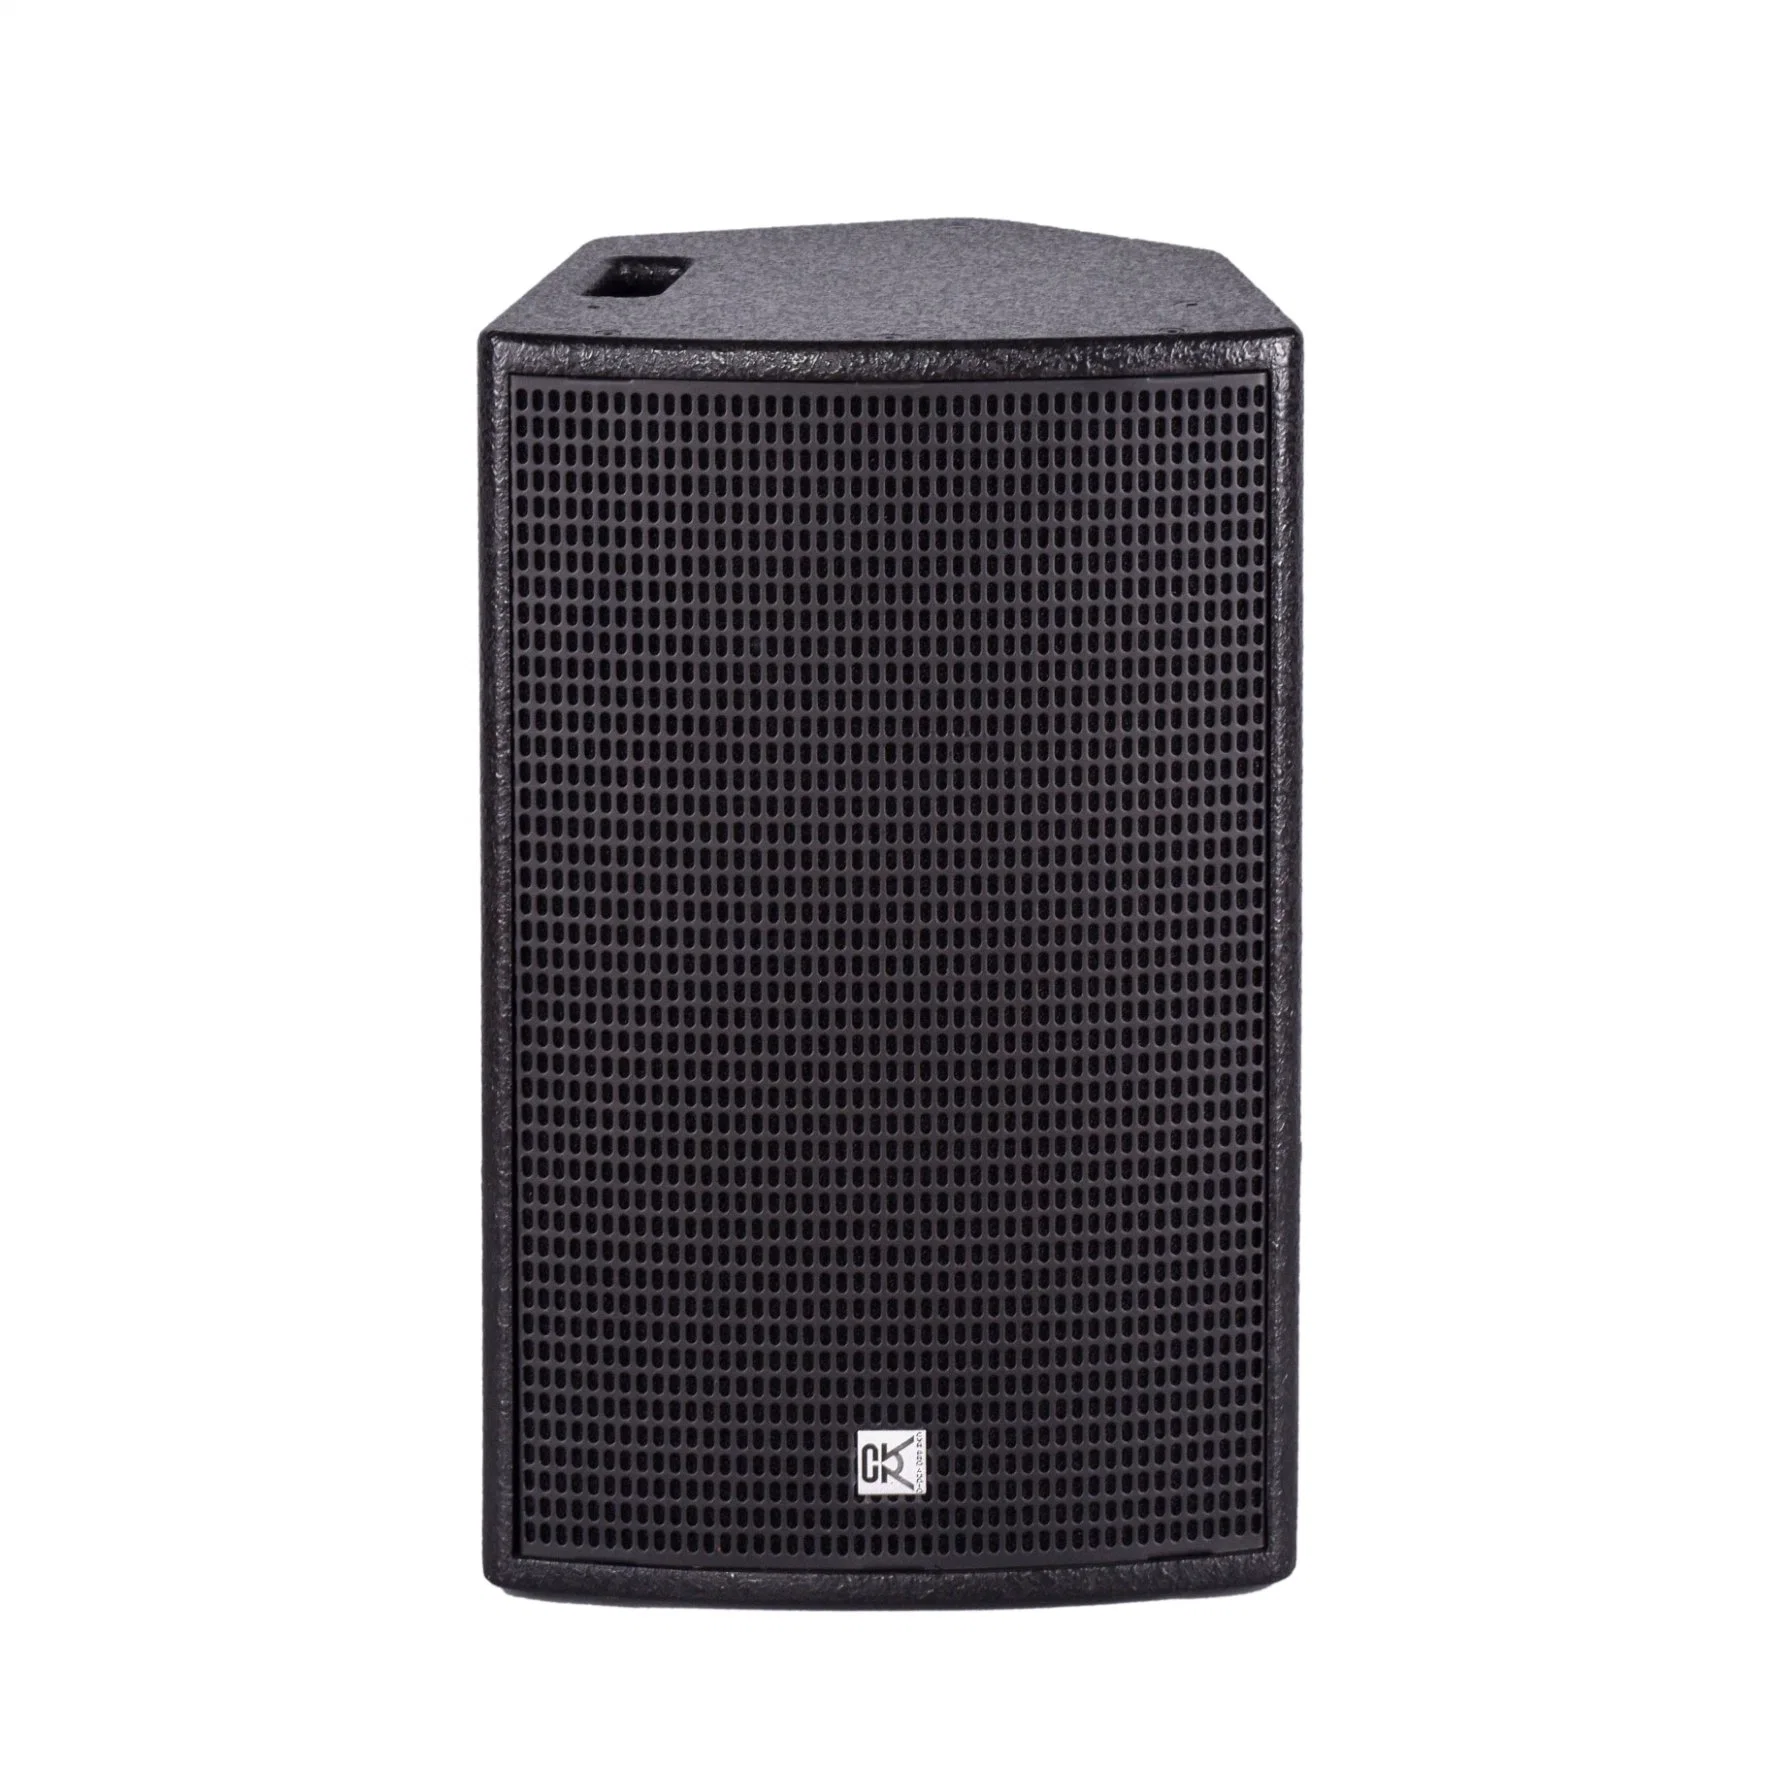 Cvr DJ Professional Speaker Two Way Full Range Loudspeaker